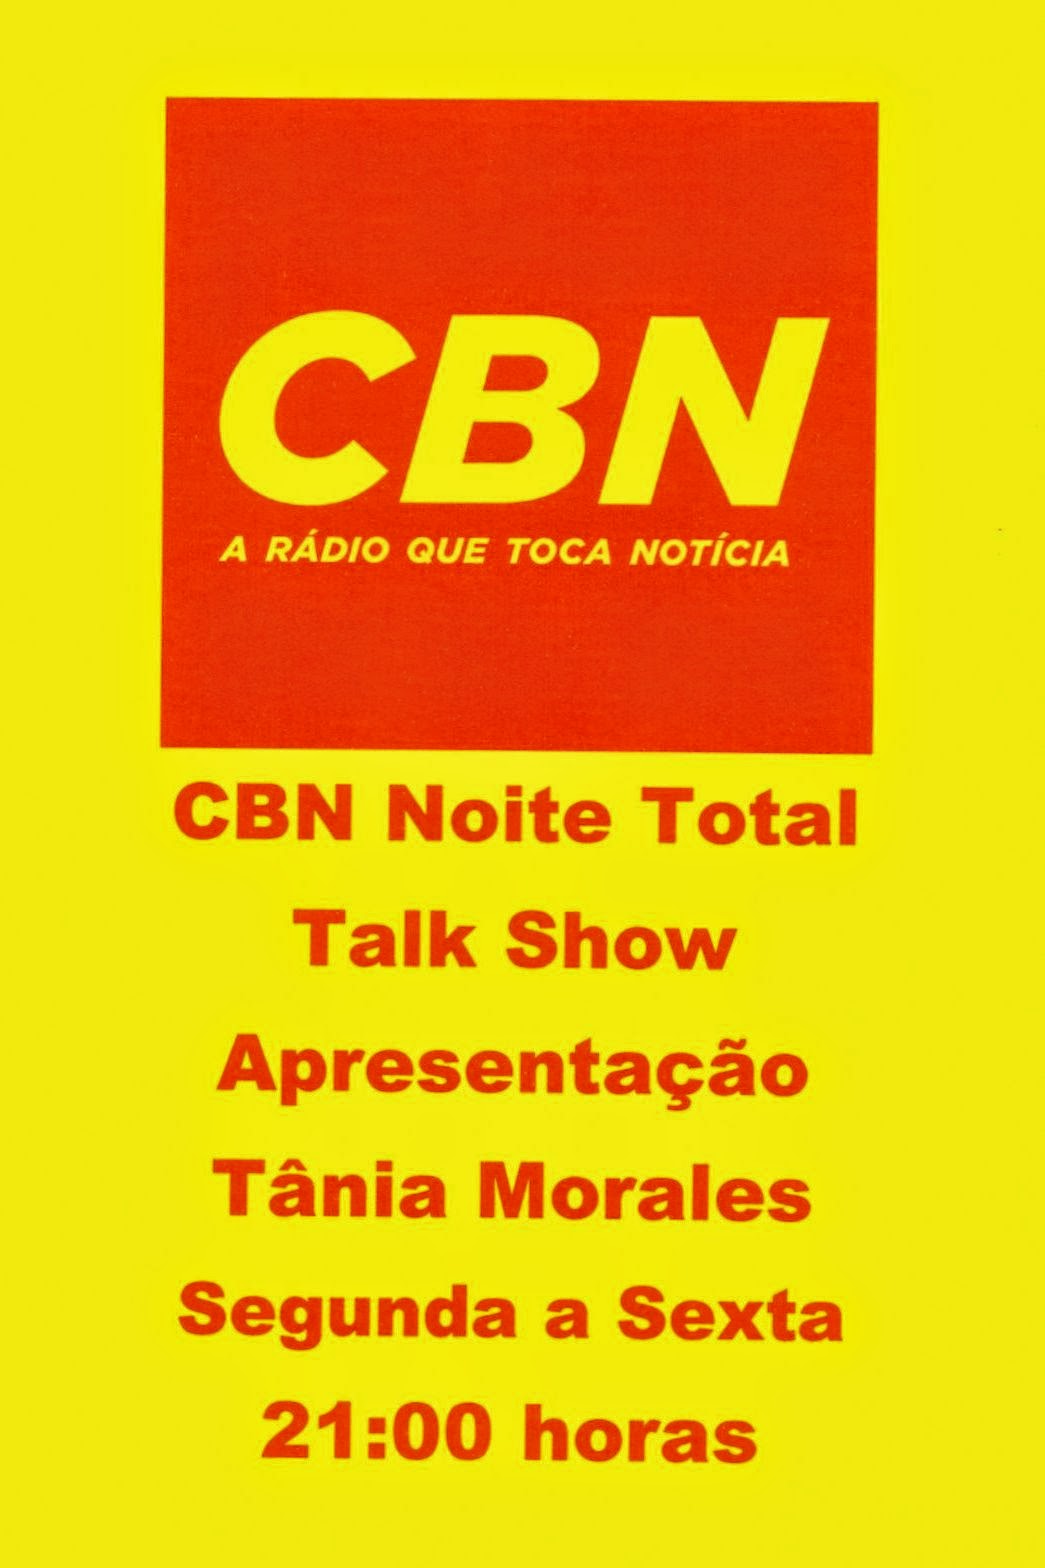 CBN - A rádio que toca notícia - Minibolos decorados com memes são